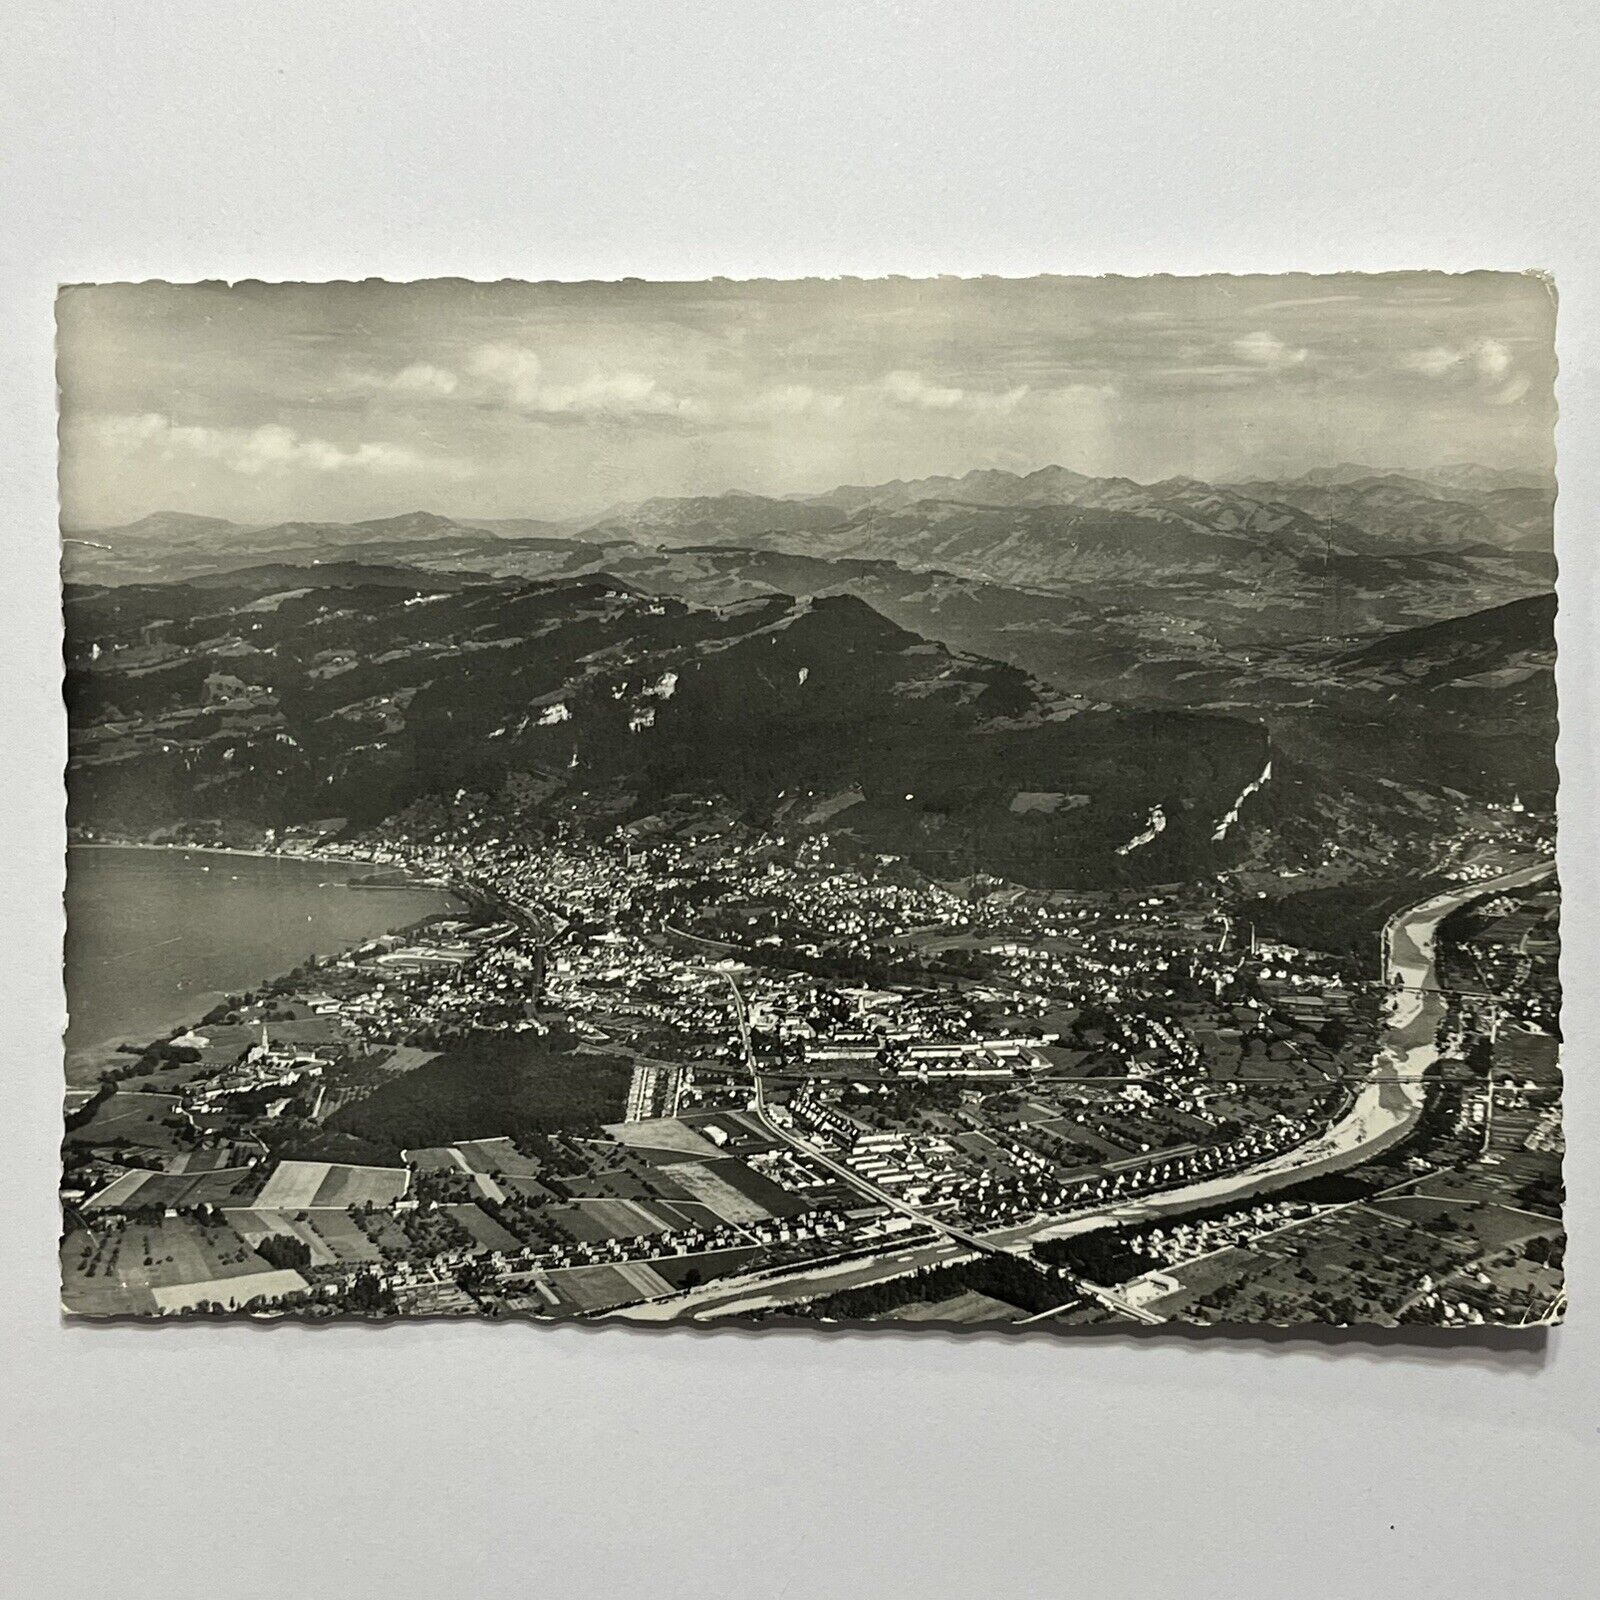 Vintage Postcard Europe Austria Monochrome City Landscape Architecture ⭐️ posted